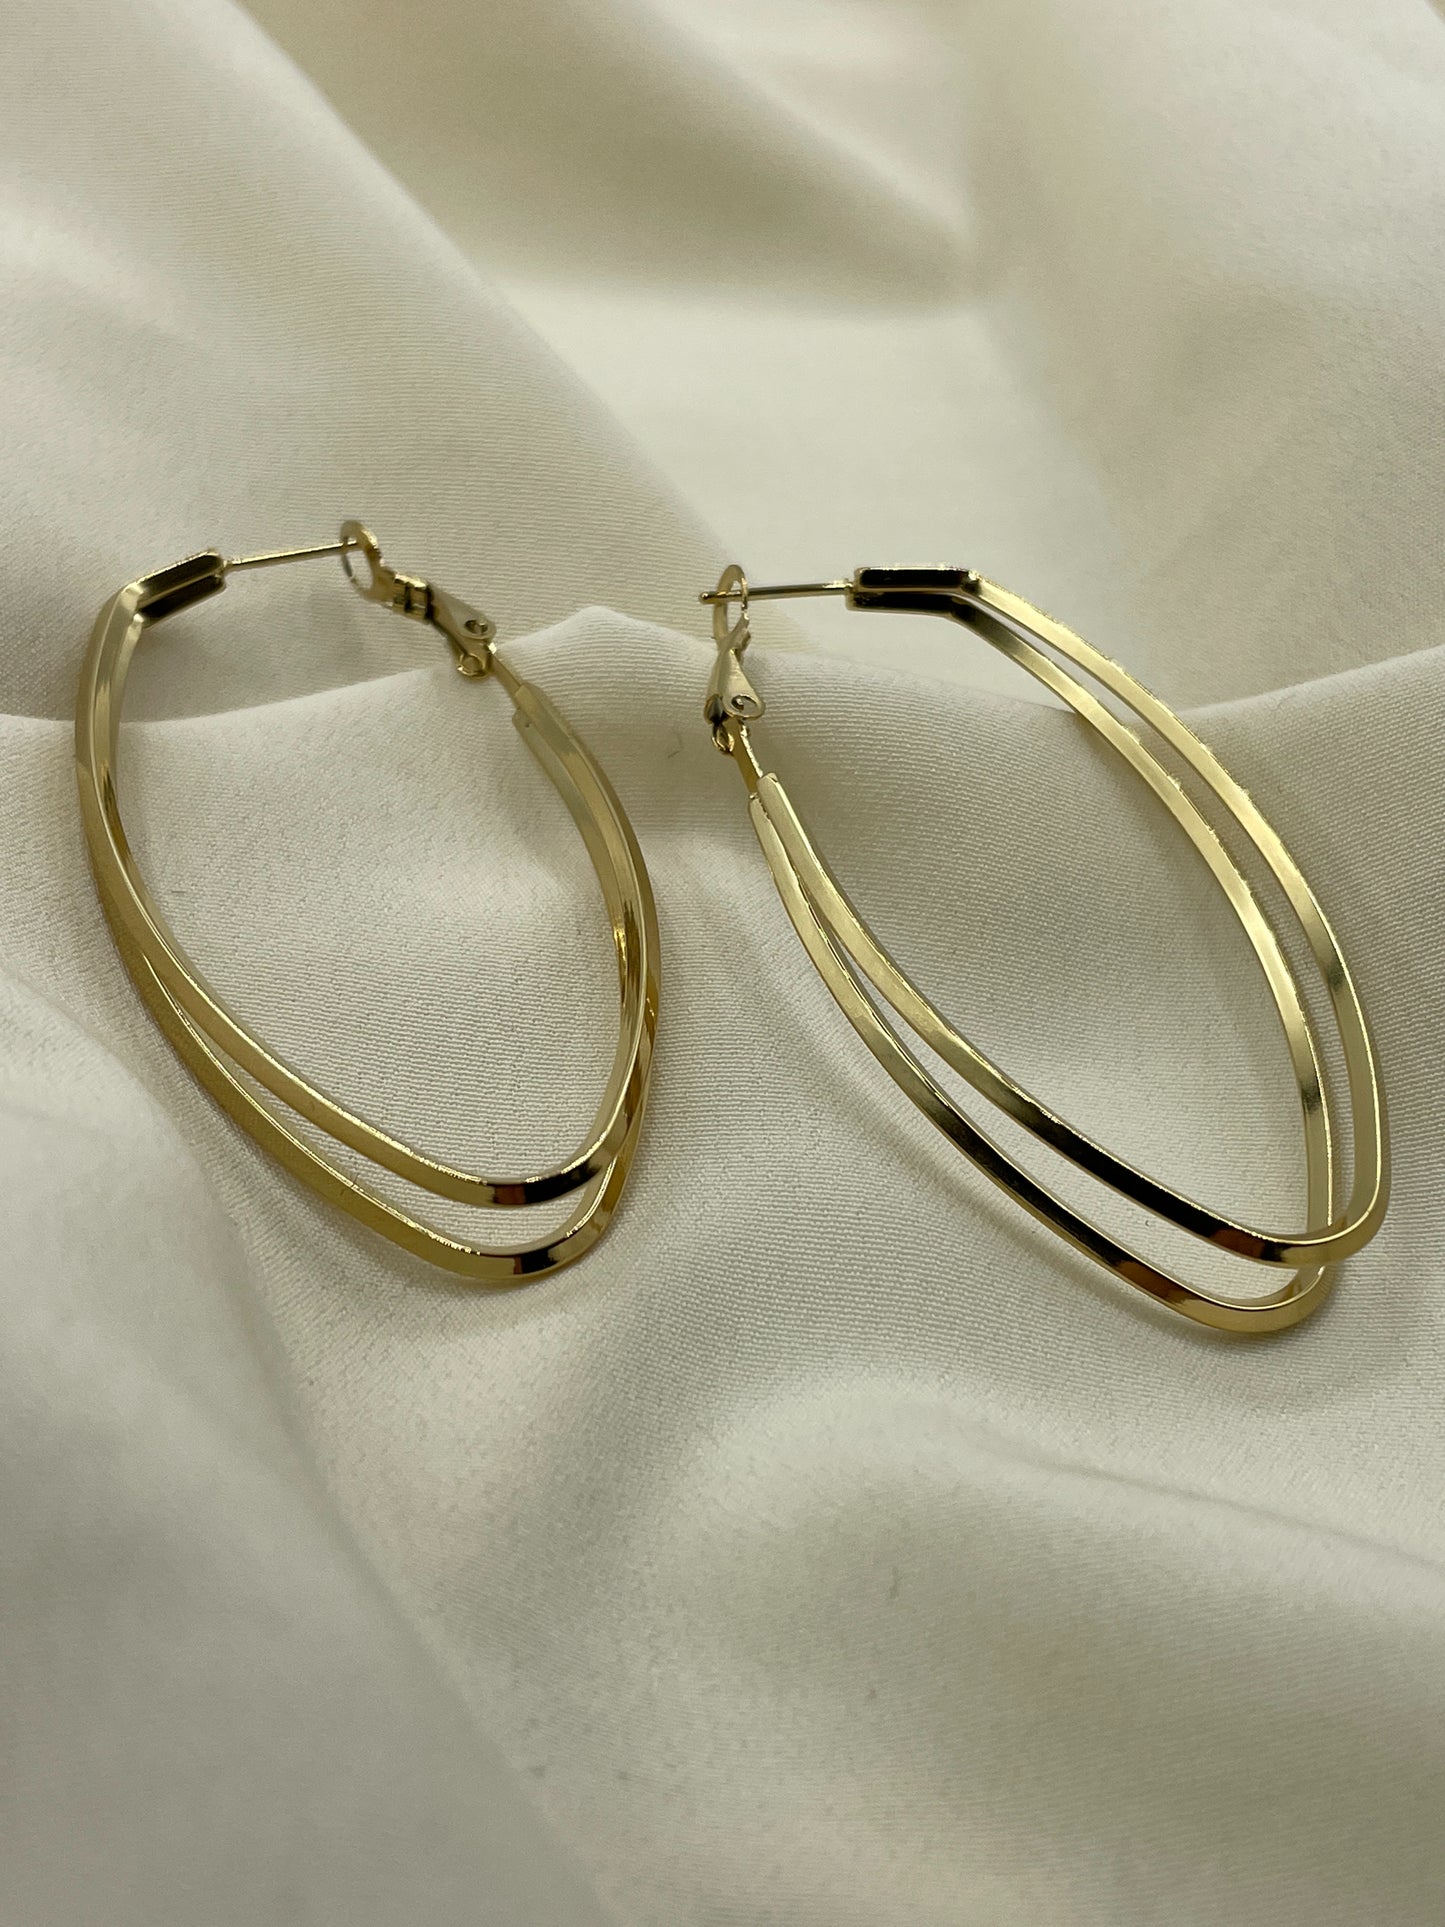 Double Oval Hoops Earrings Gold